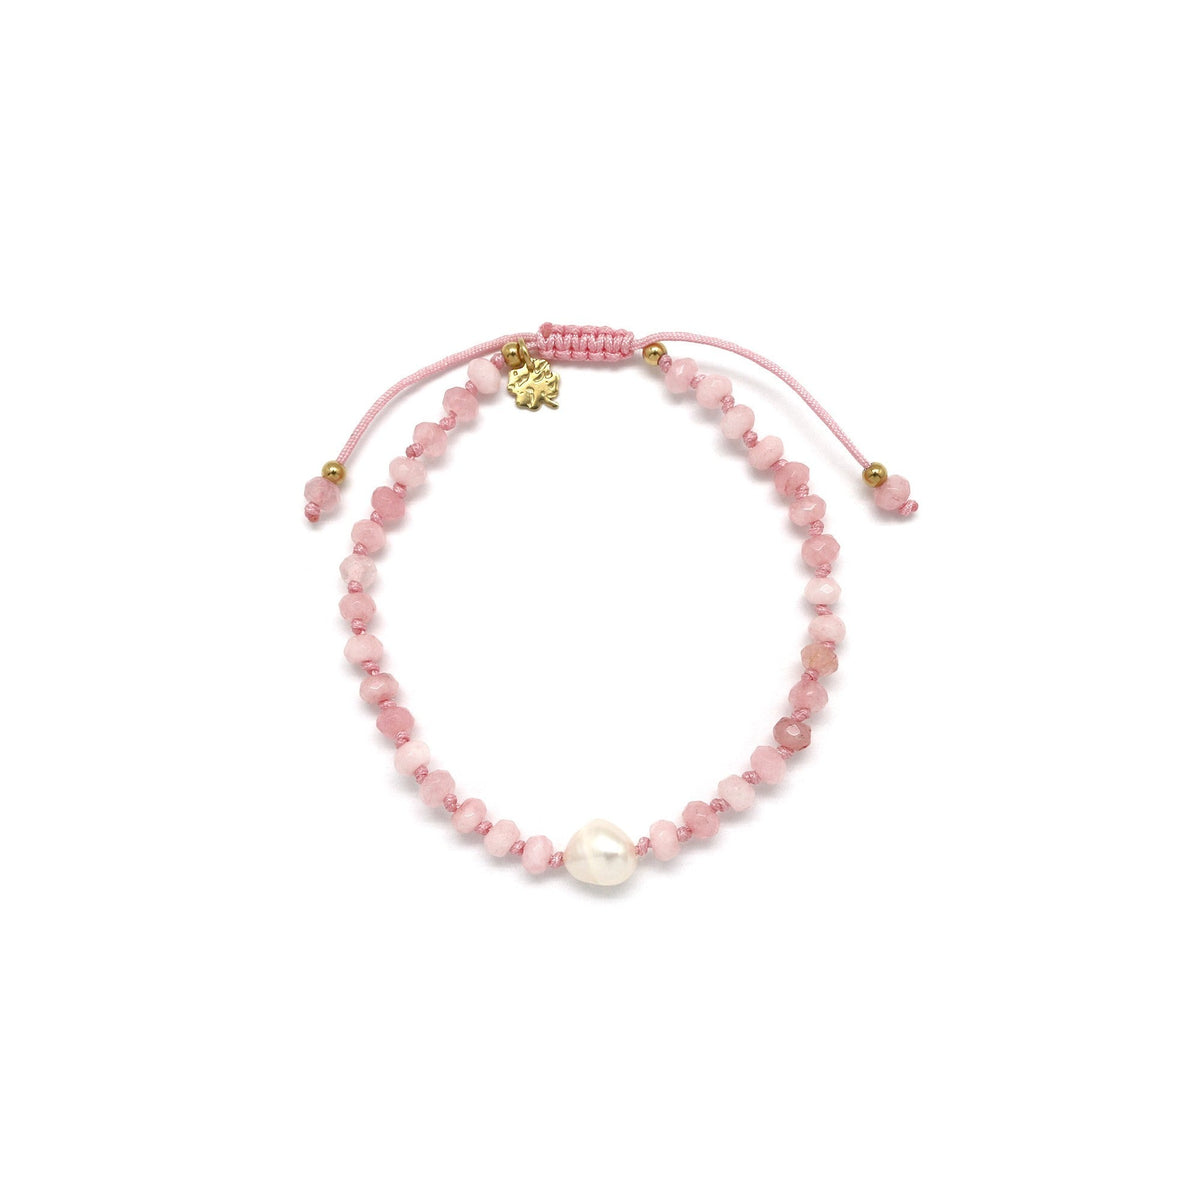 Adjustable rose quartz bracelet with pearl